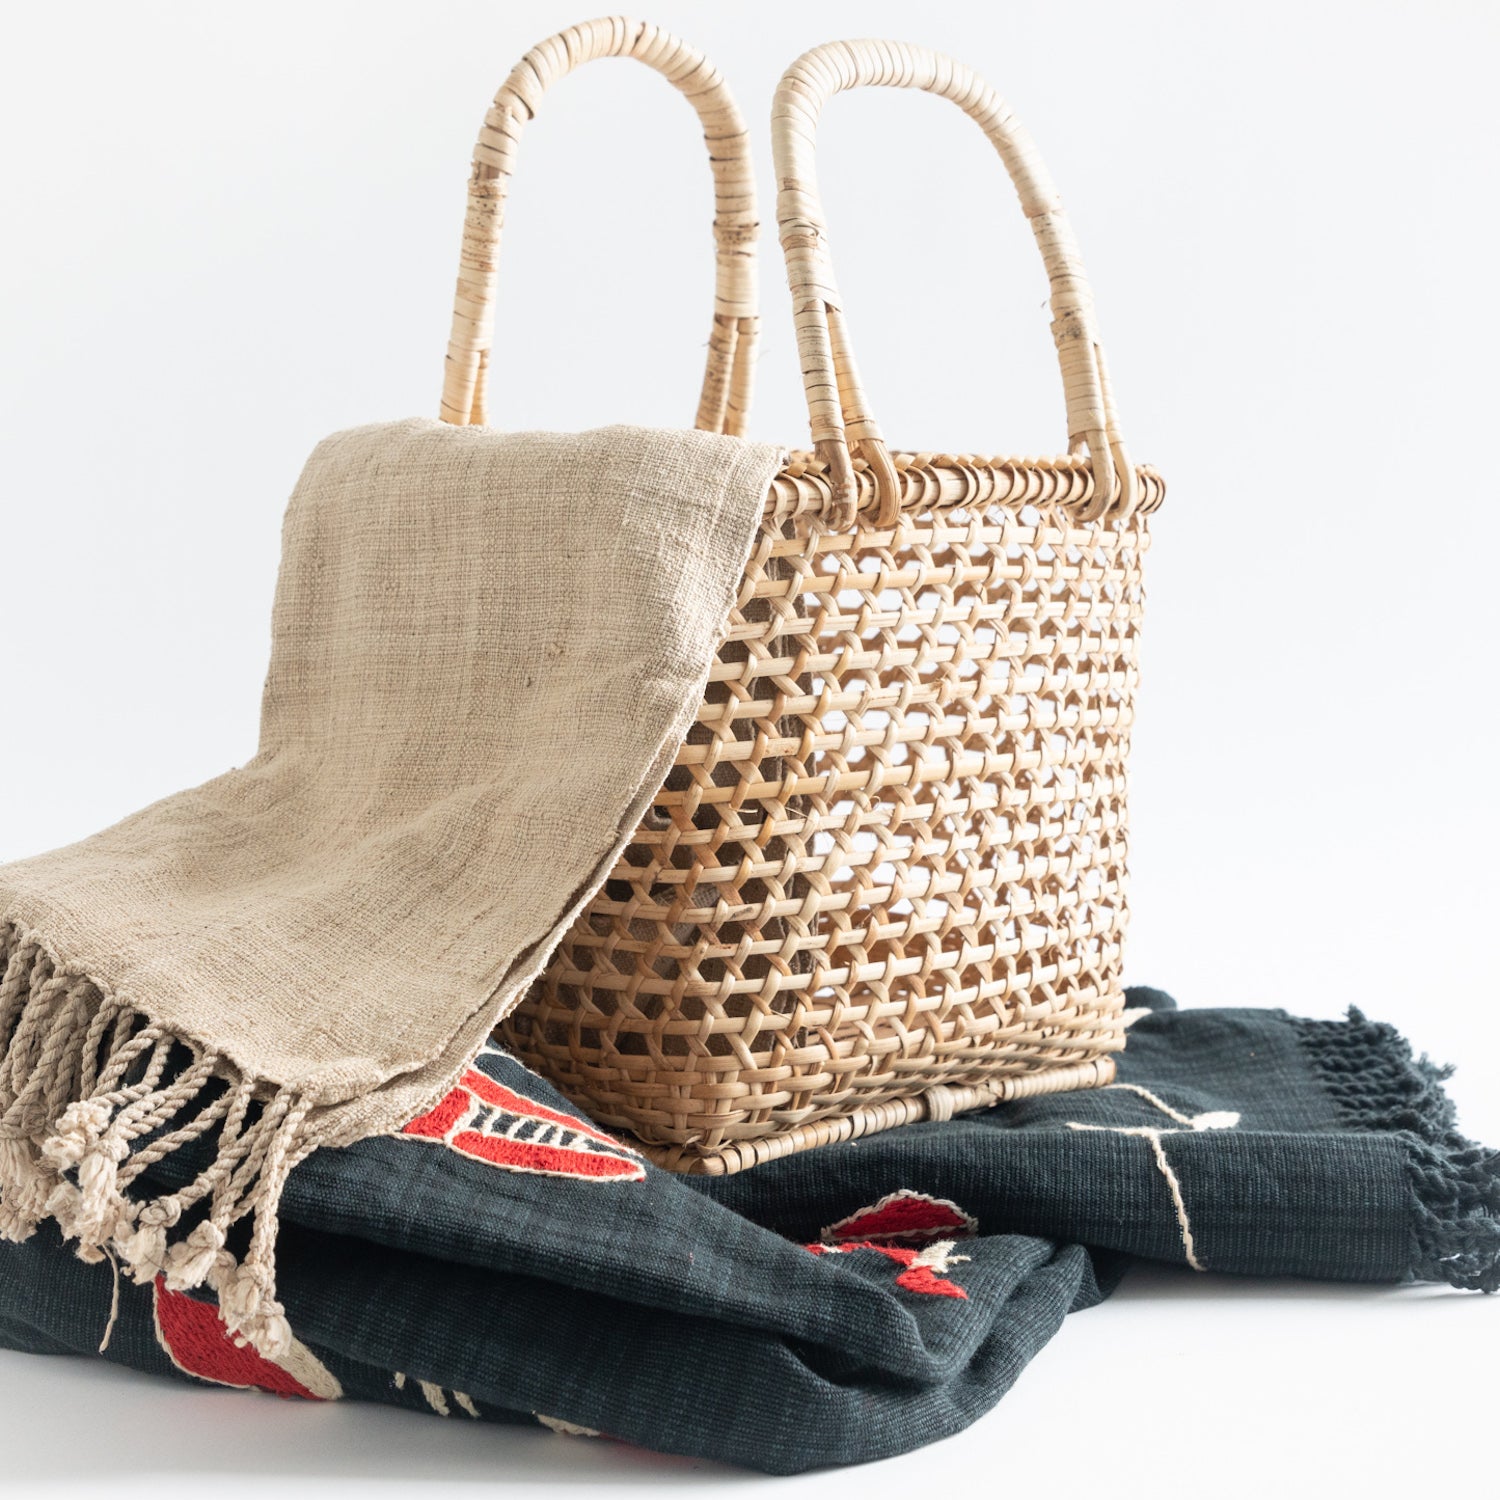 Loom Woven Textiles | Bamboo Basket | Artisan Made | YGN Collective